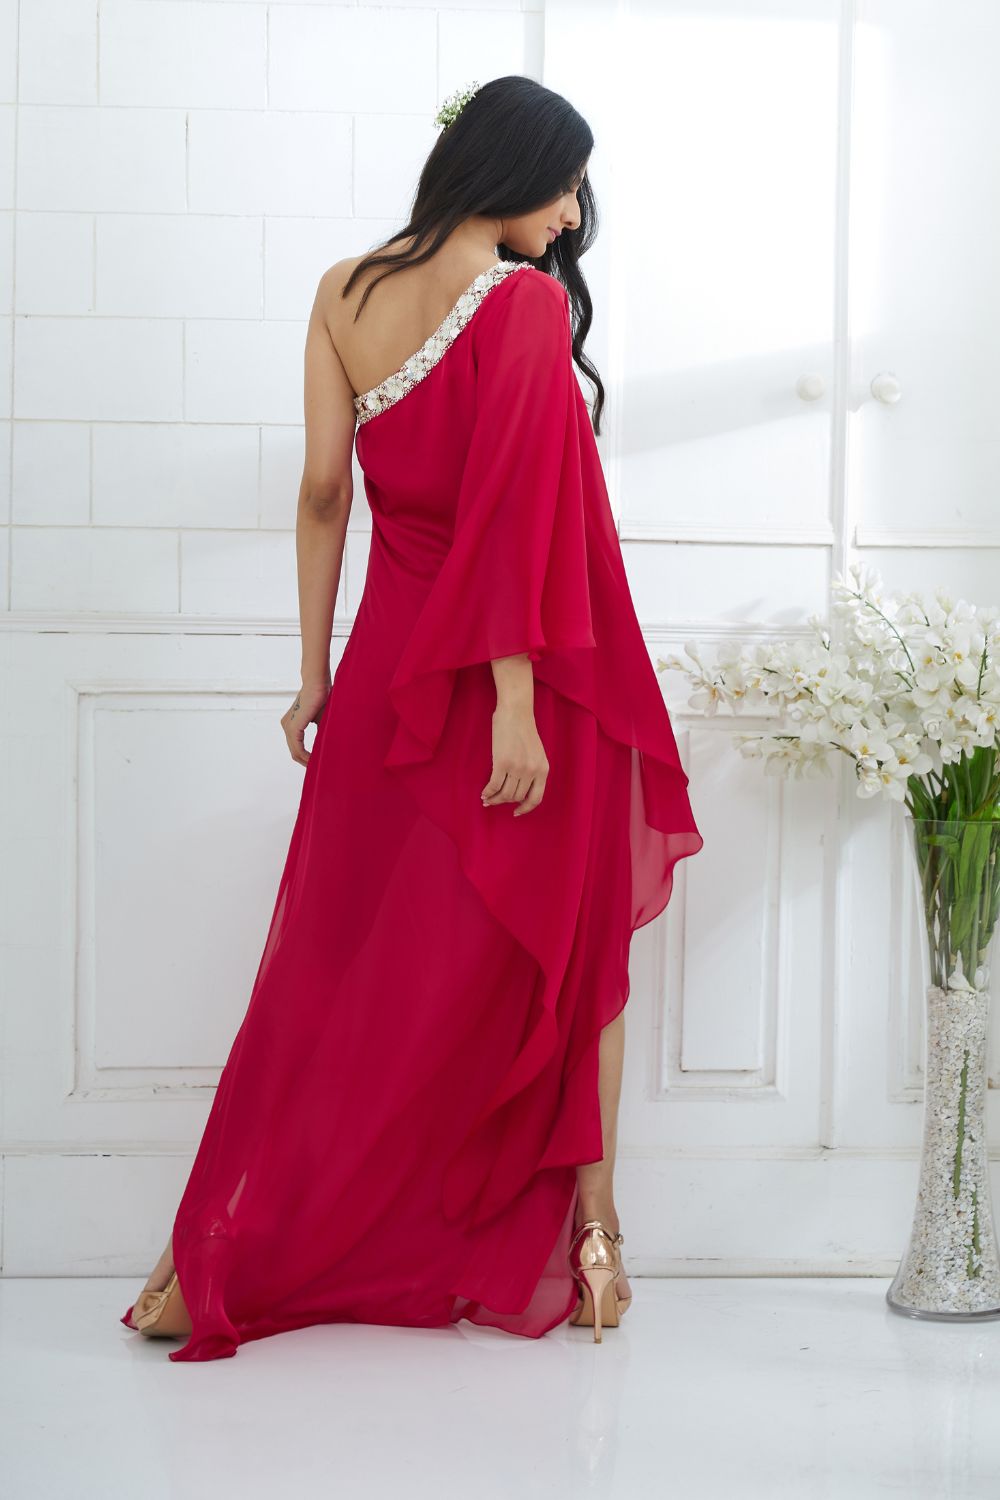 Rihan Fashions Women Bodycon Rani Pink Dress